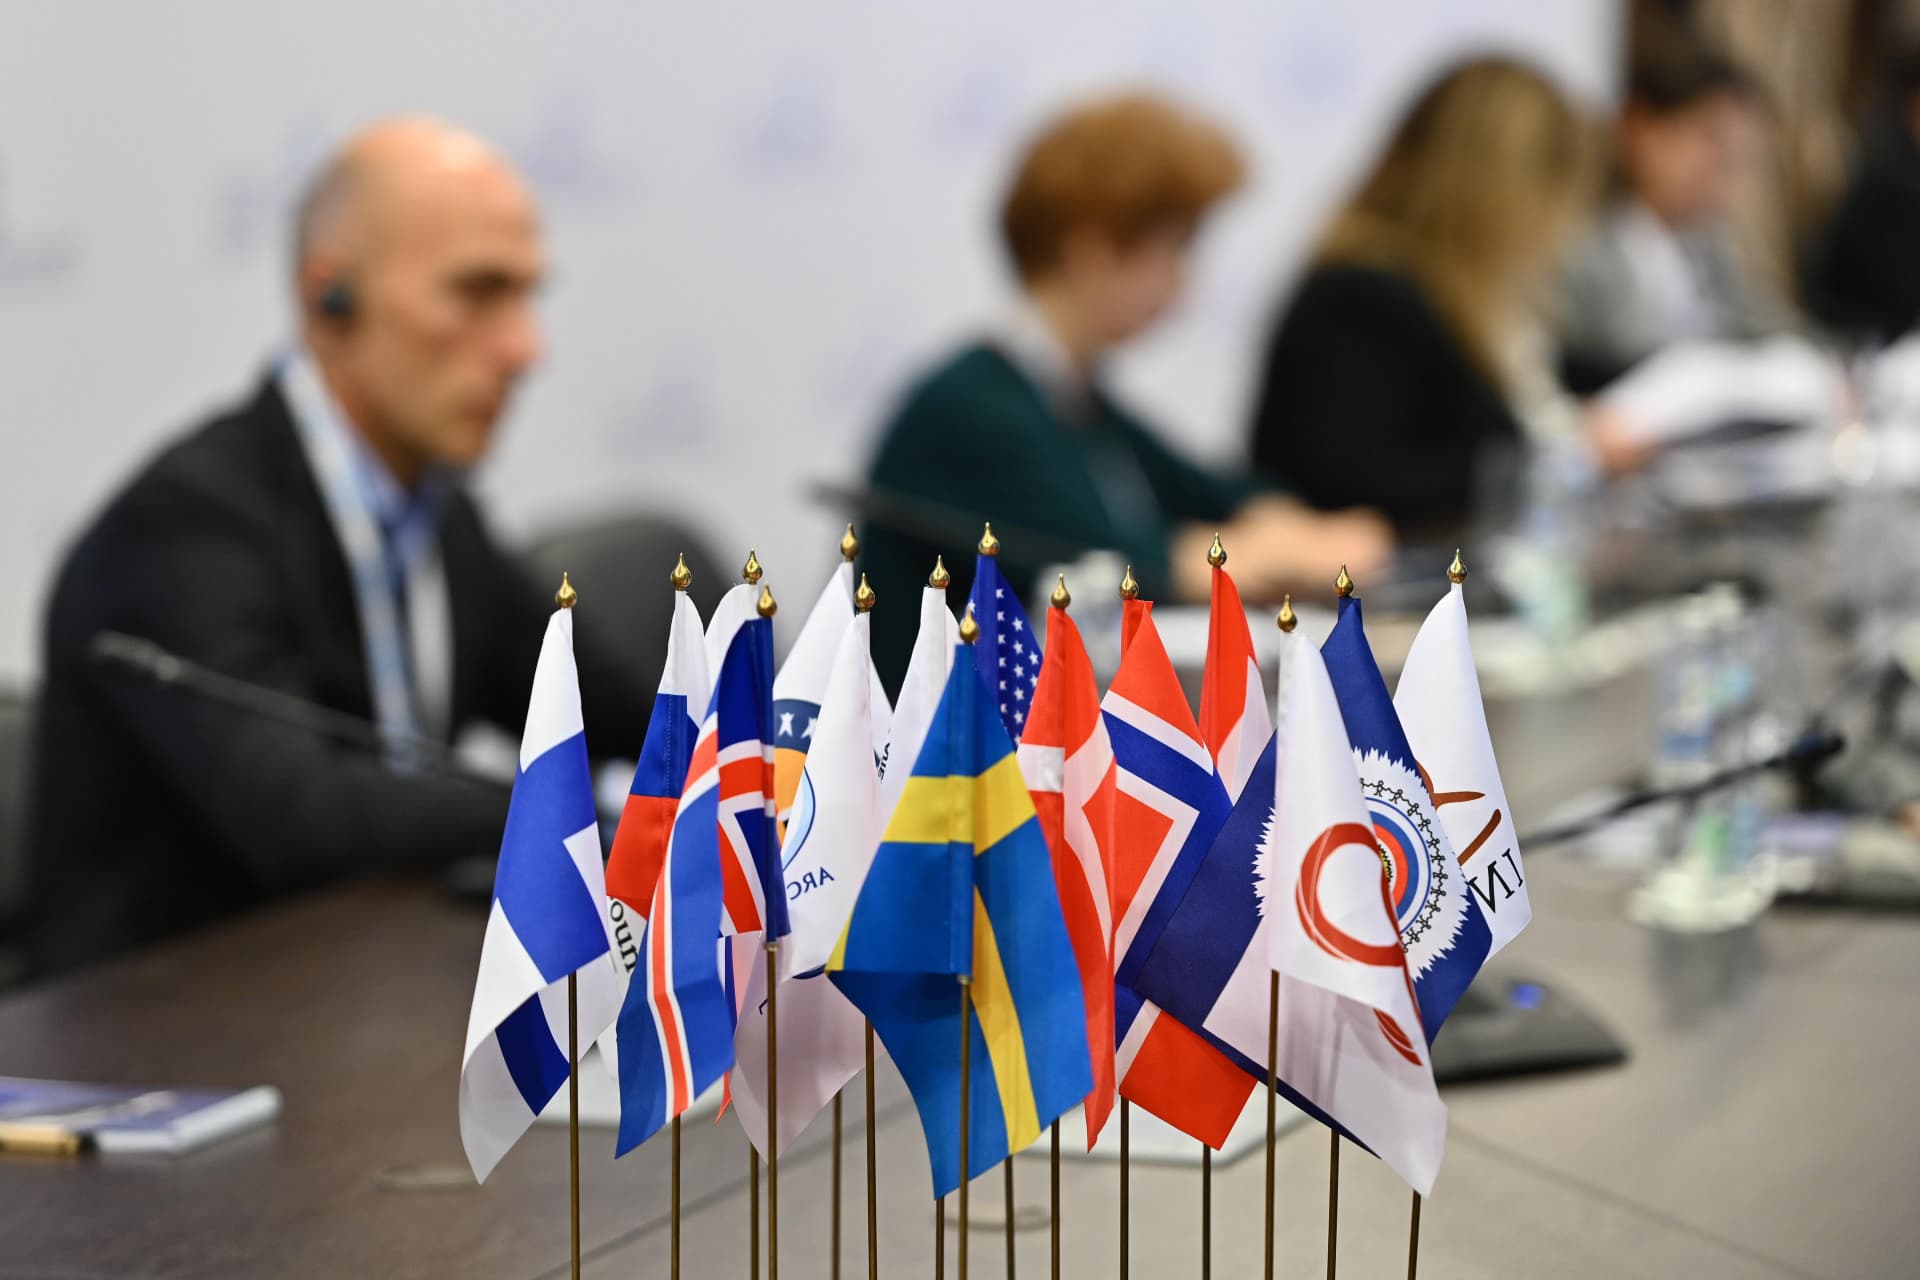 Молодежная международная модель Арктического совета состоится в Архангельске 14–18 ноября